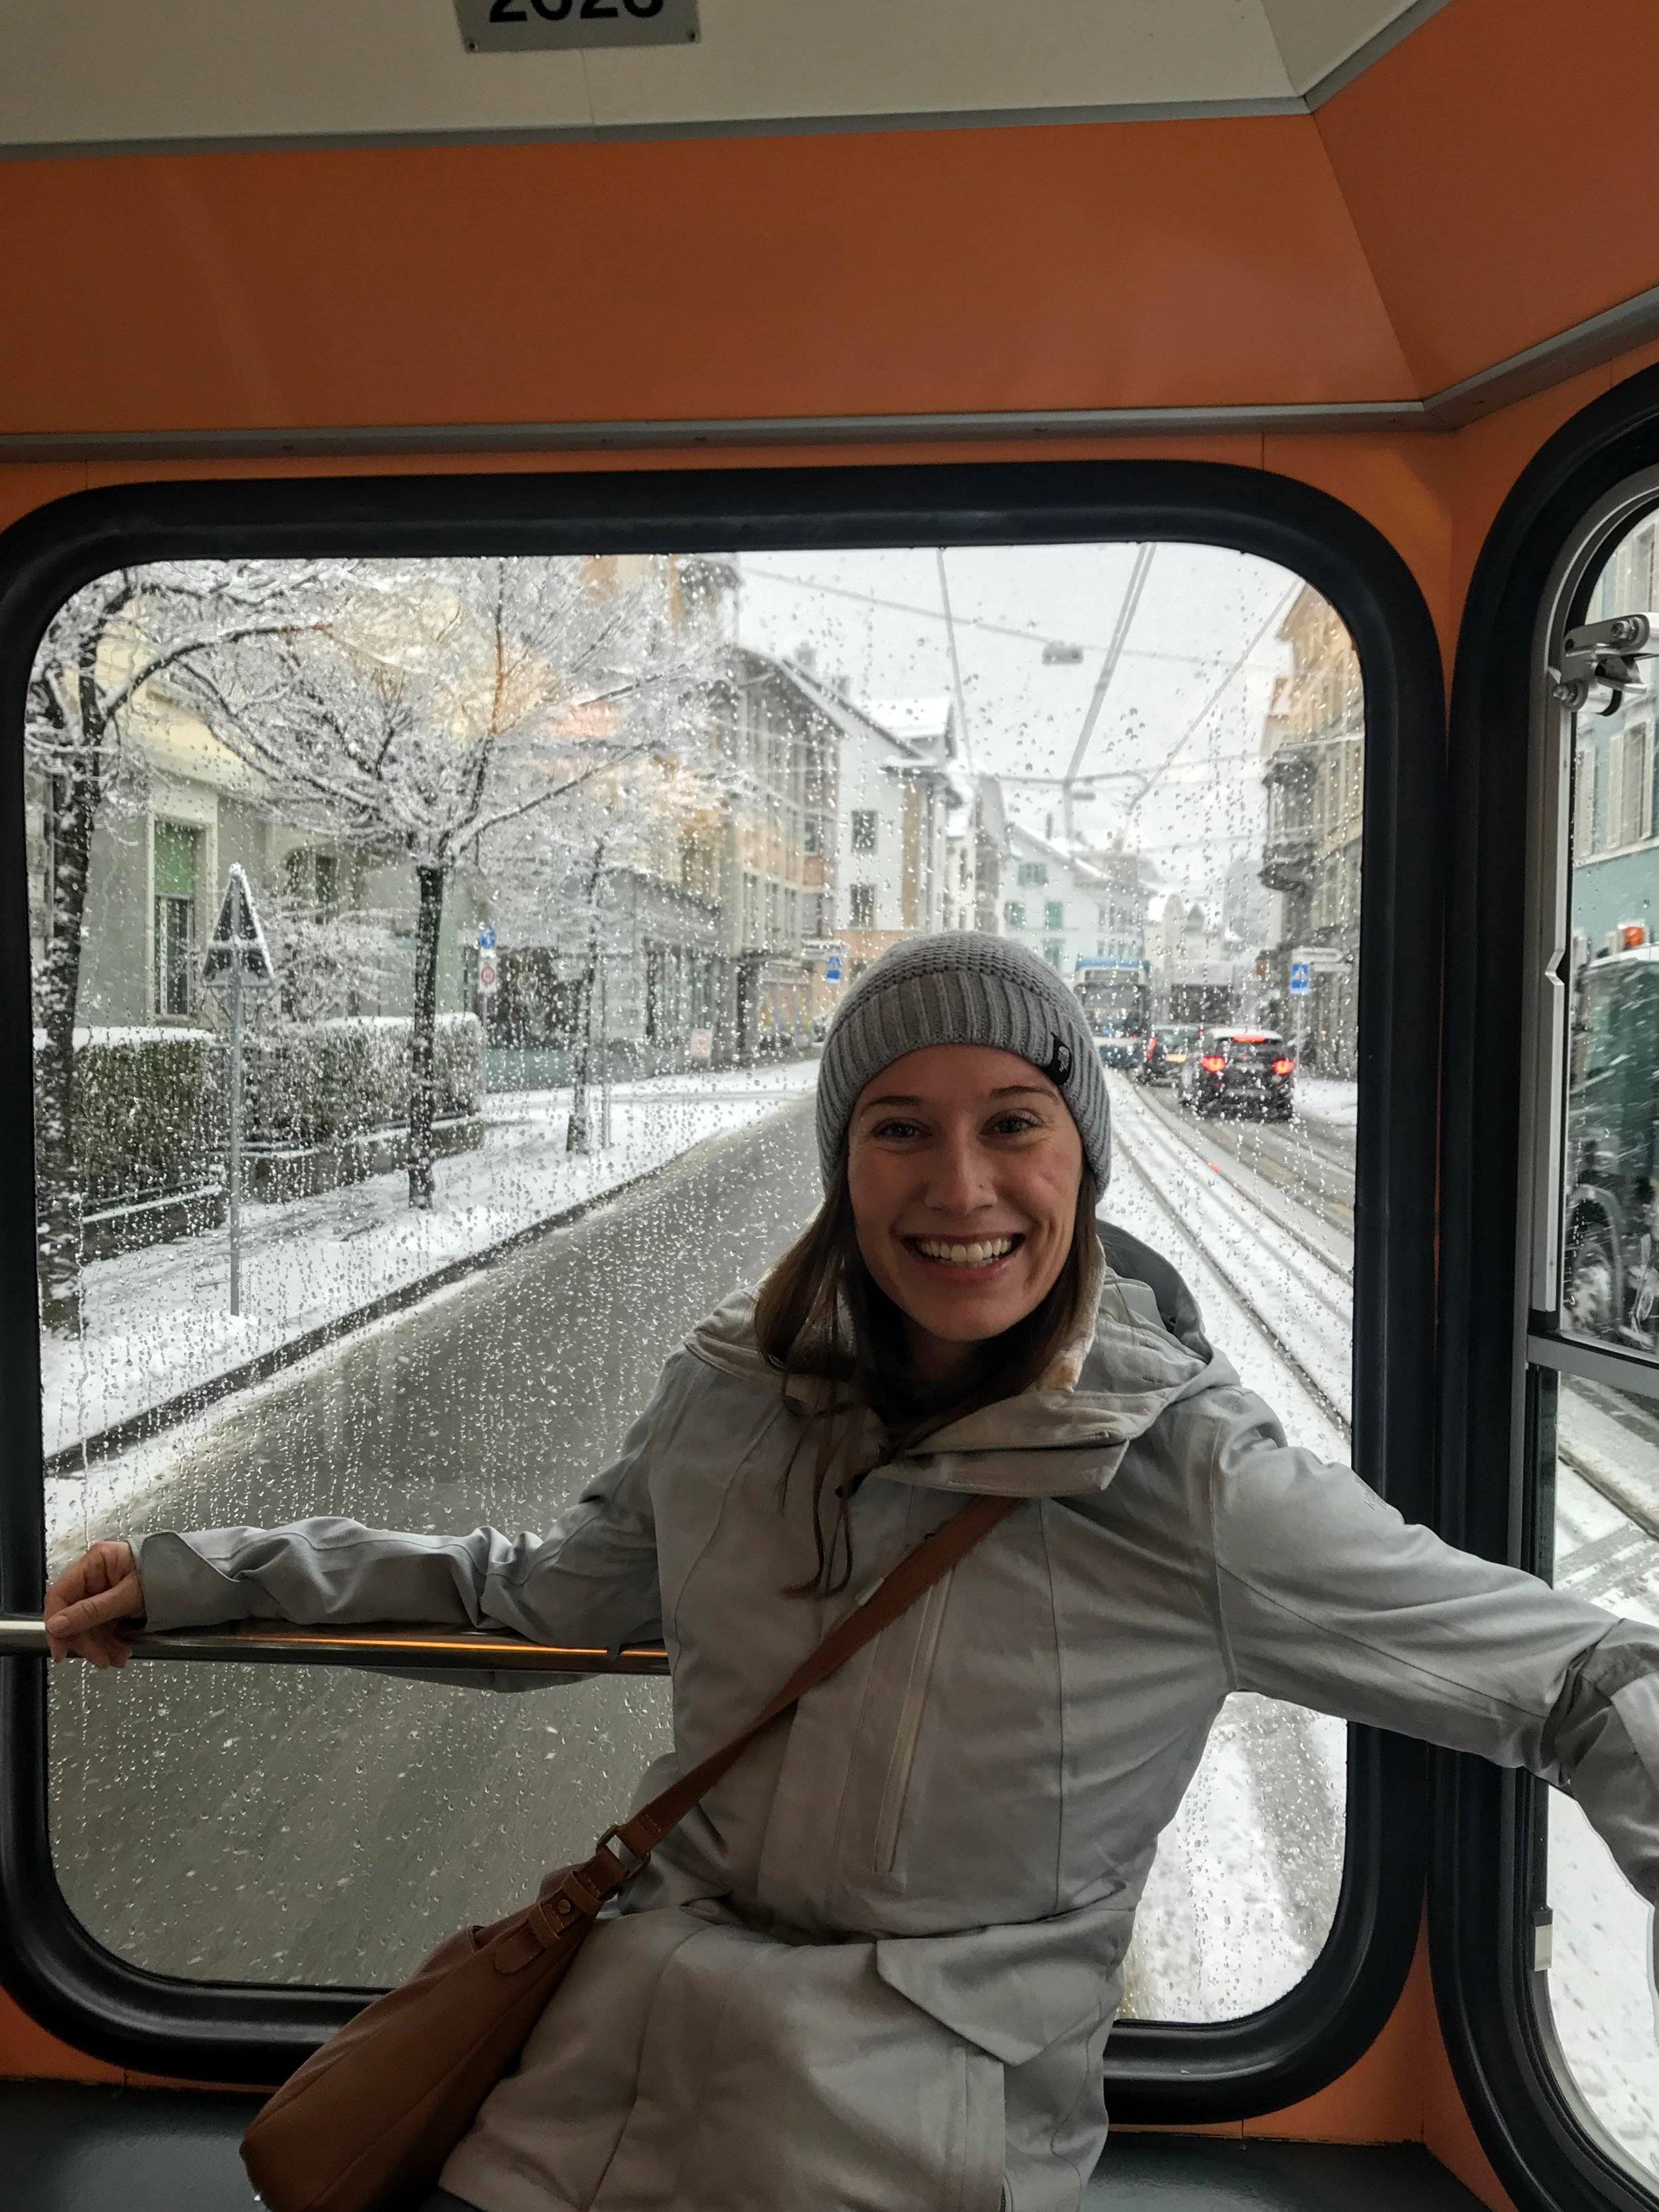 Snowy ride on the Zurich city tram